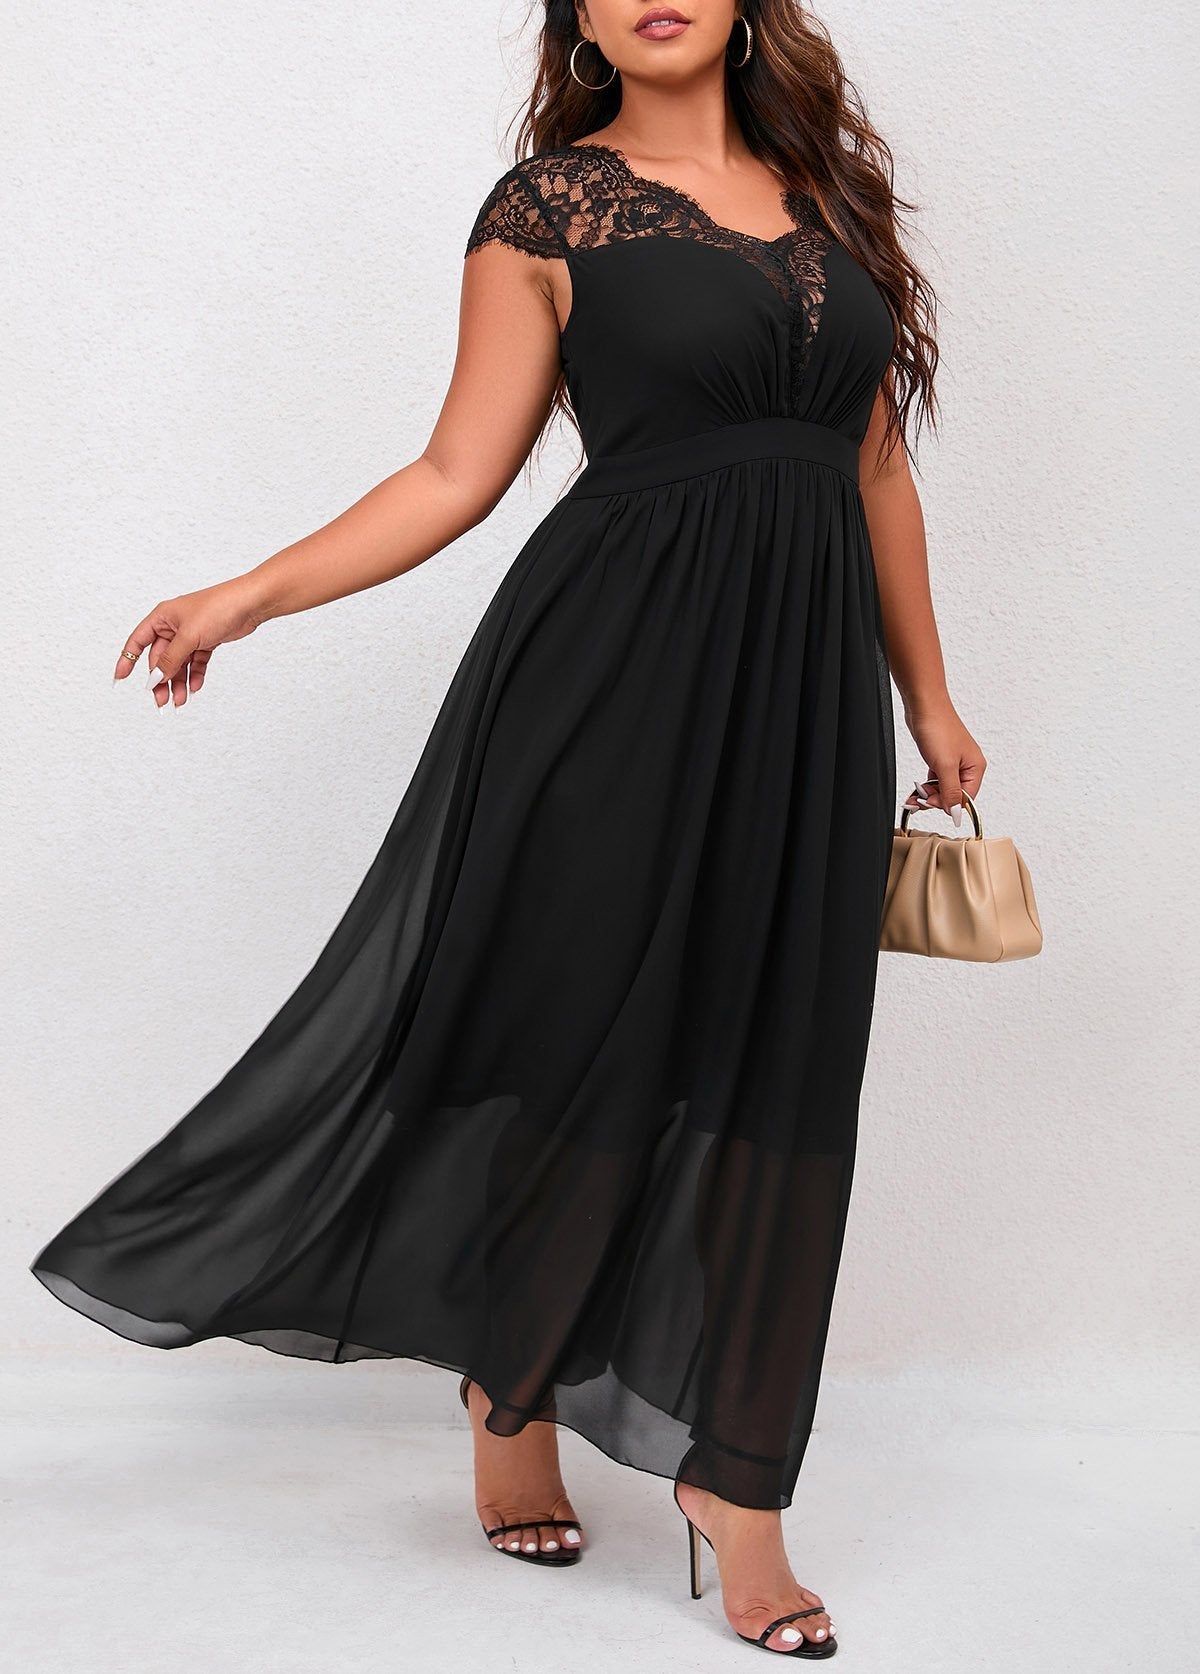 Plus Size Lace Patchwork Black Dress